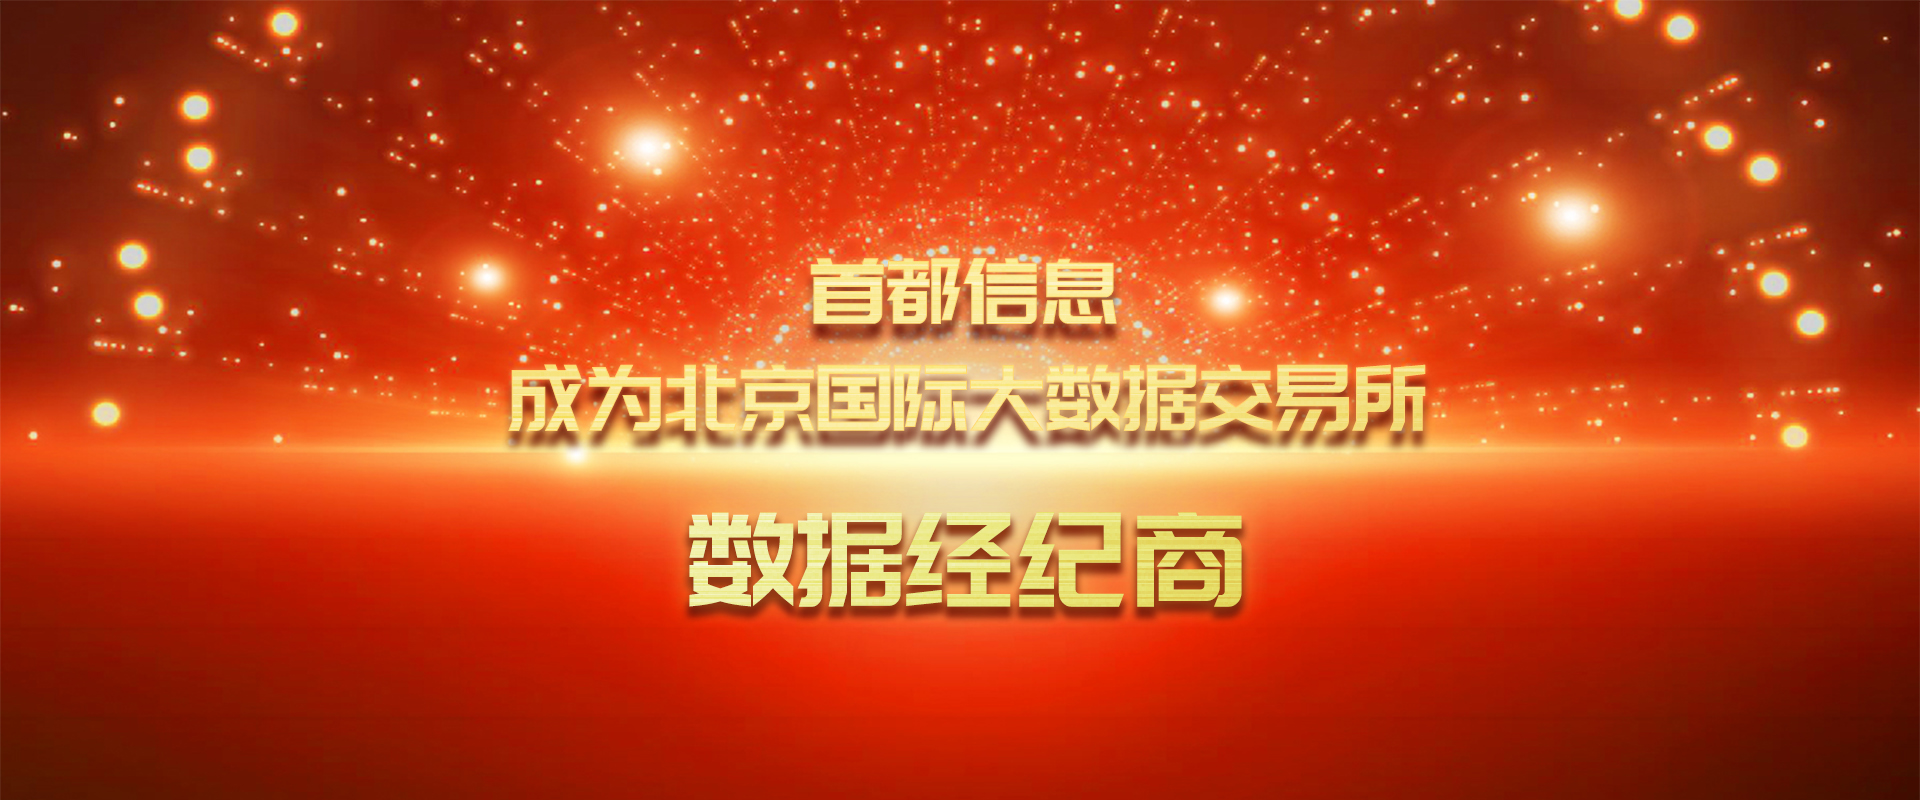 银河贵宾GALAXY成为北京国际大数据交易所数据经纪商